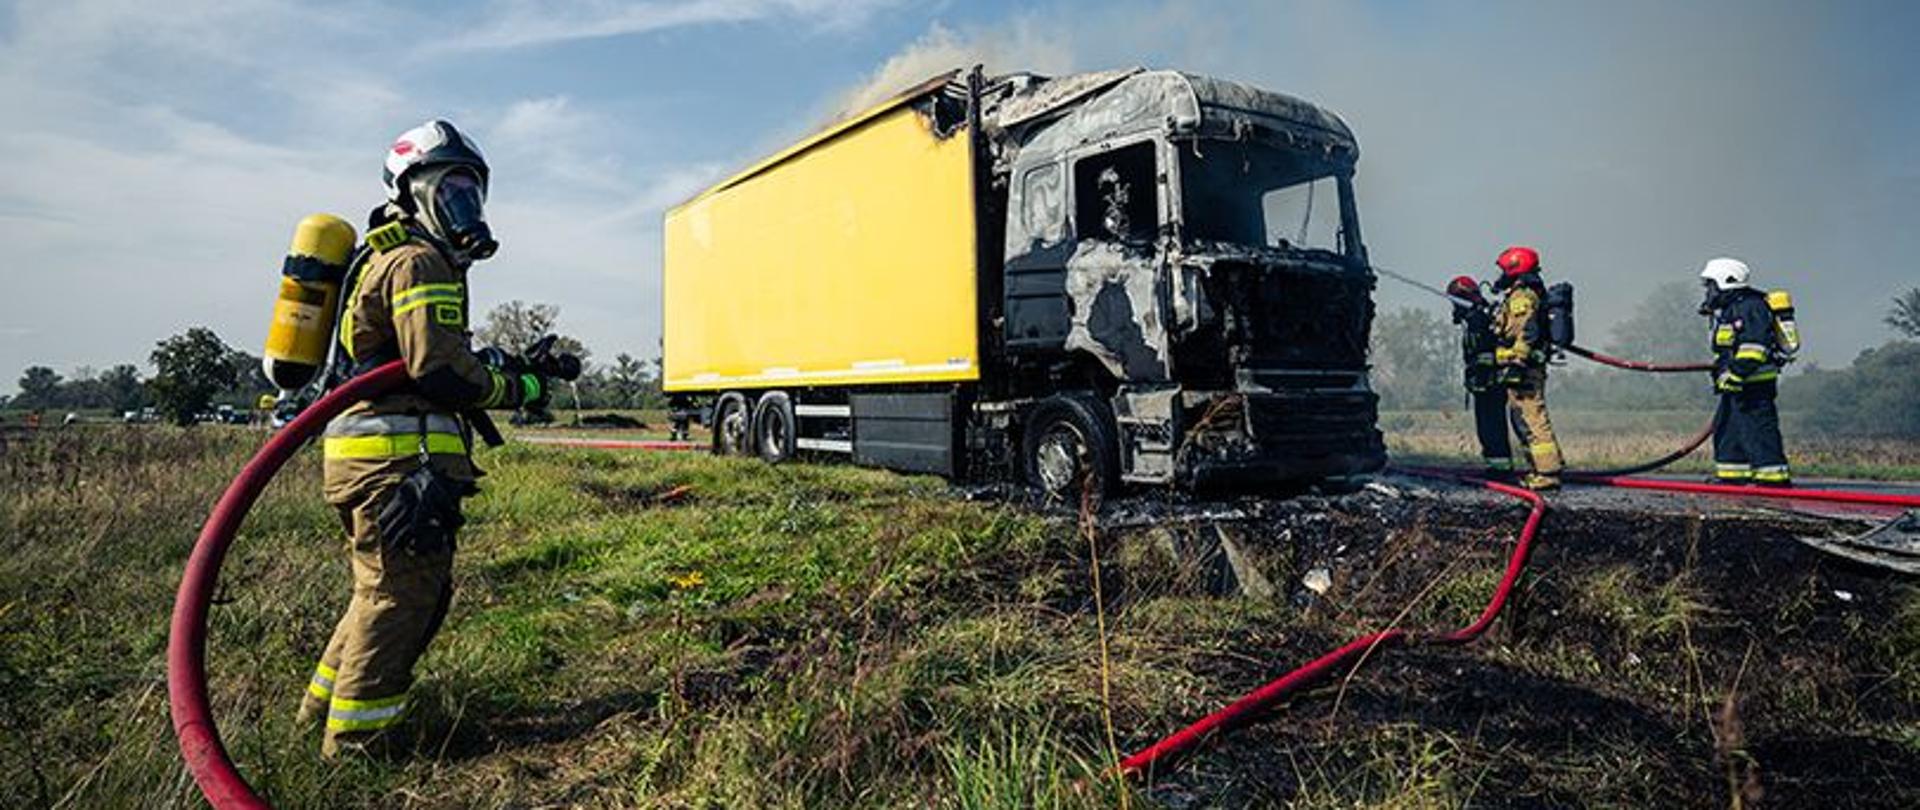 Pożar samochodu ciężarowego w Przęsławicach